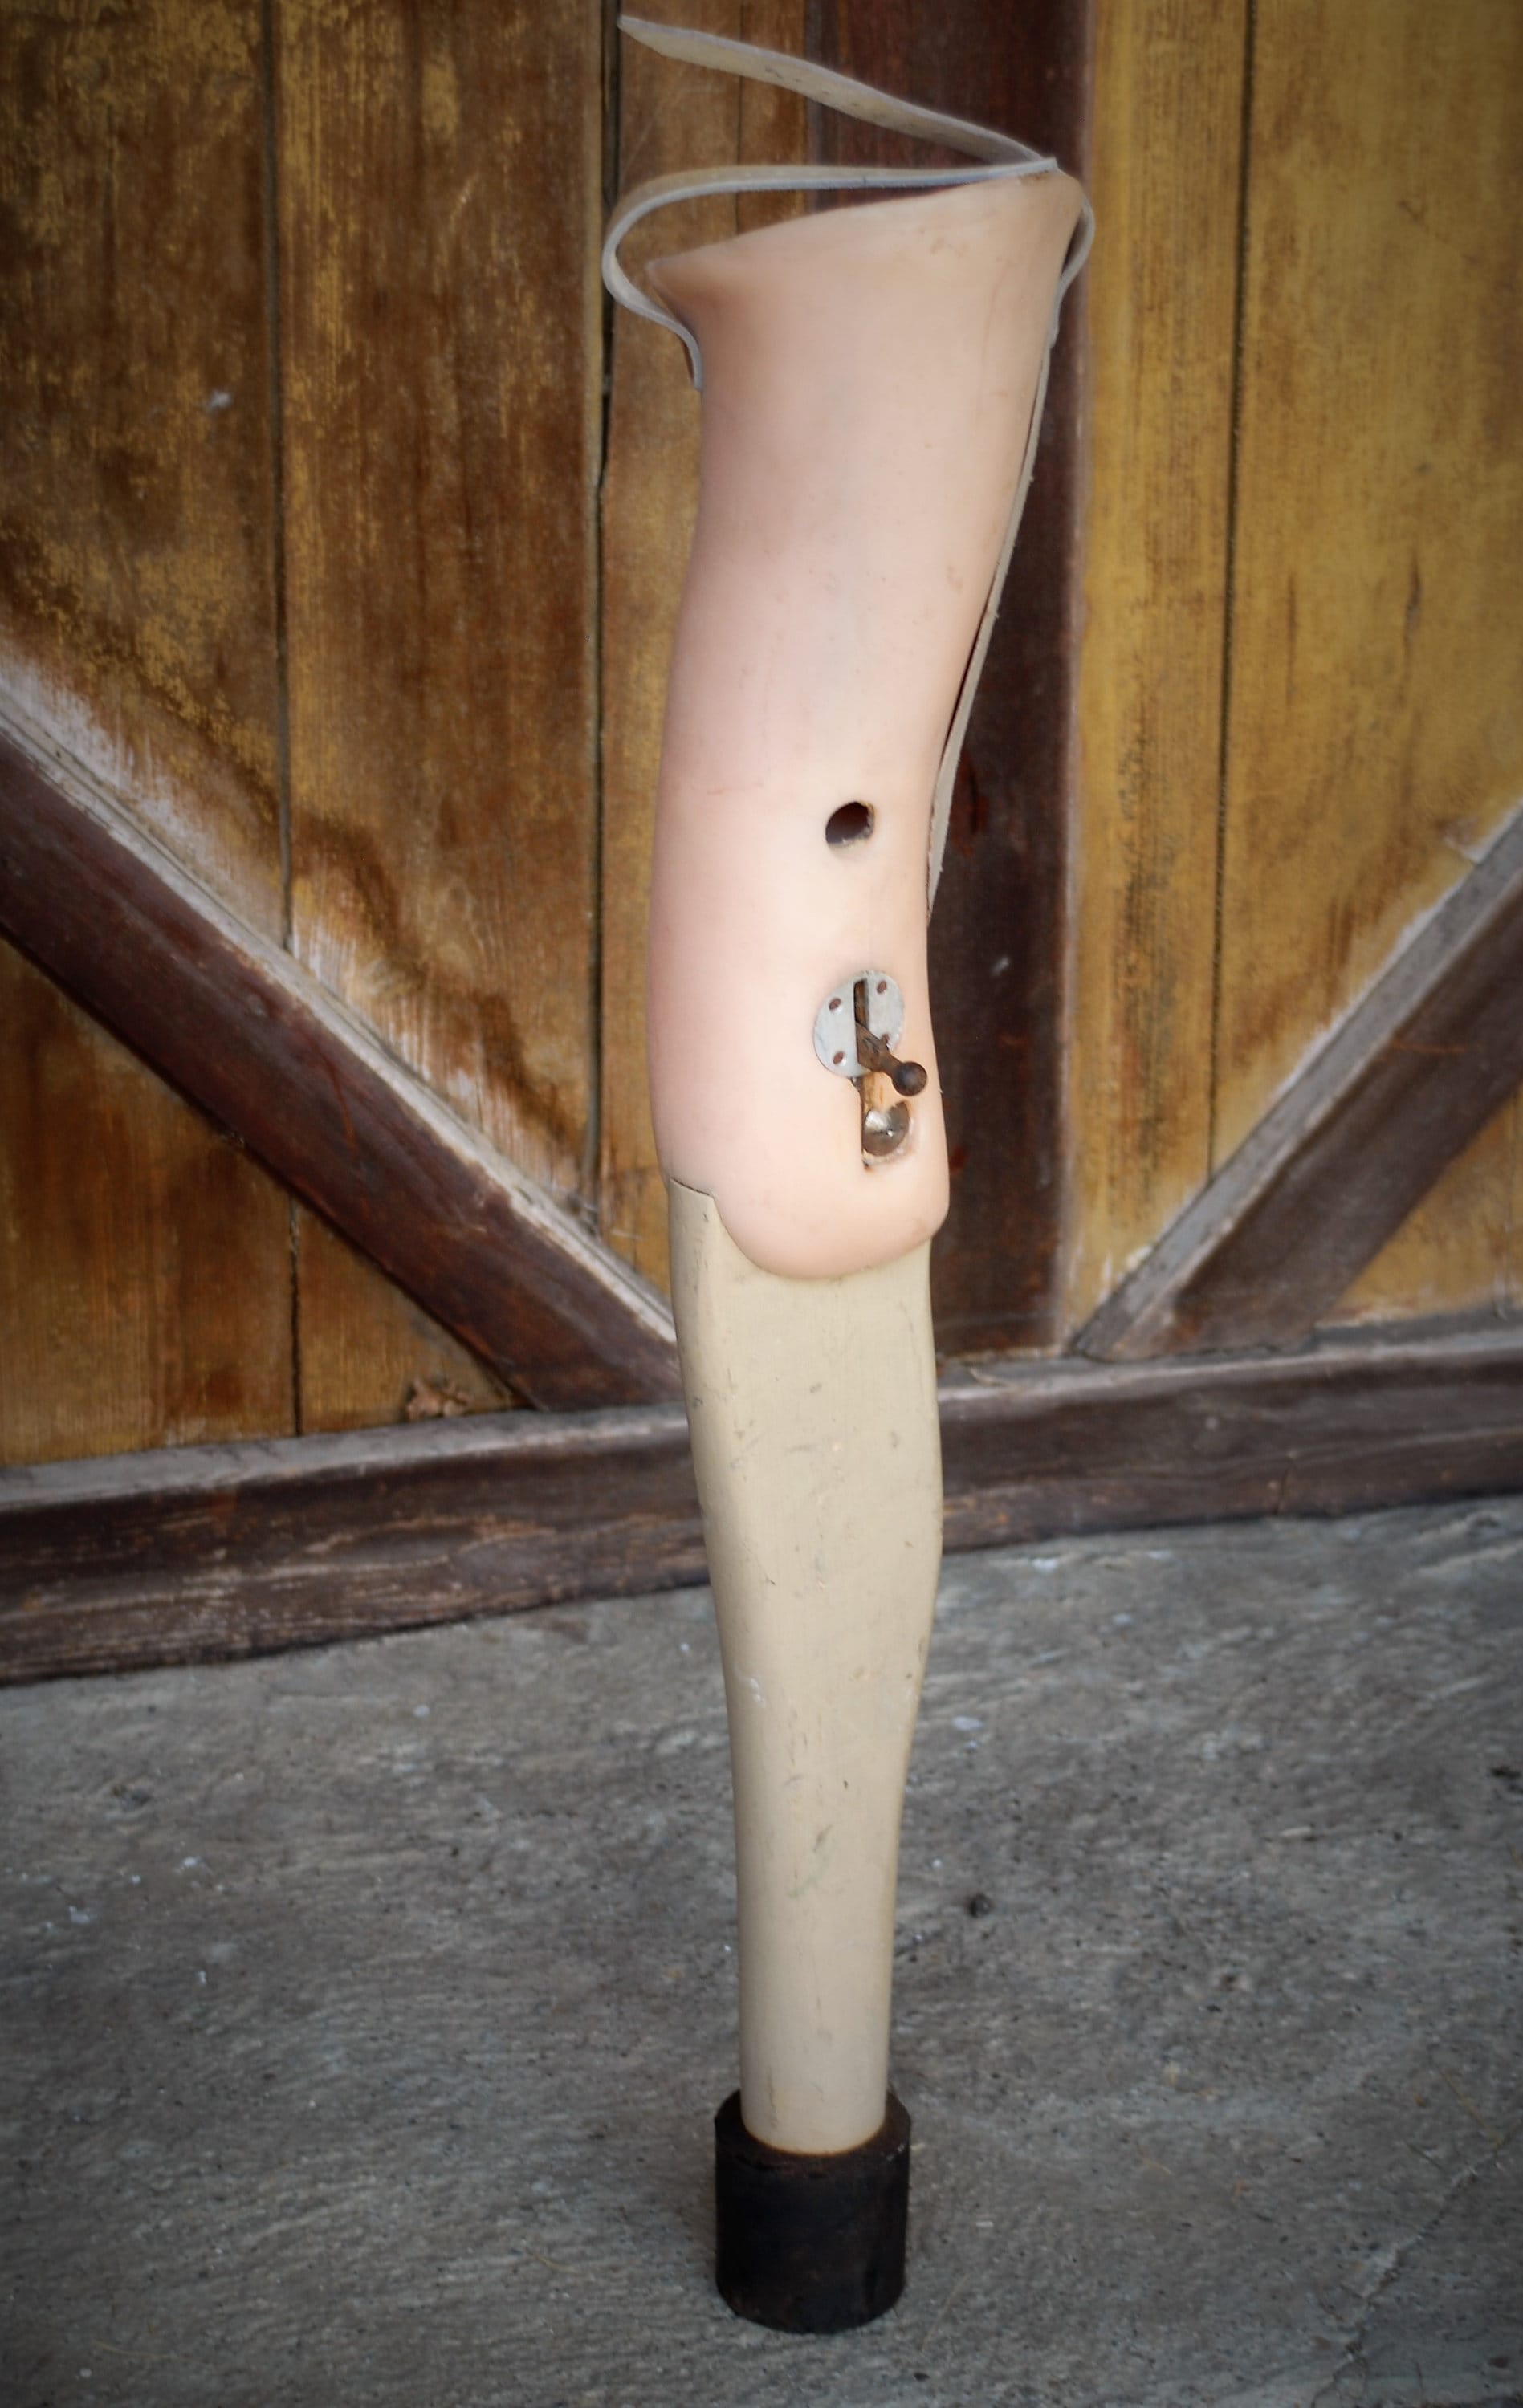 Hot Right German Womens Pegleg Peg Leg Home Prosthetic Leg -  Sweden